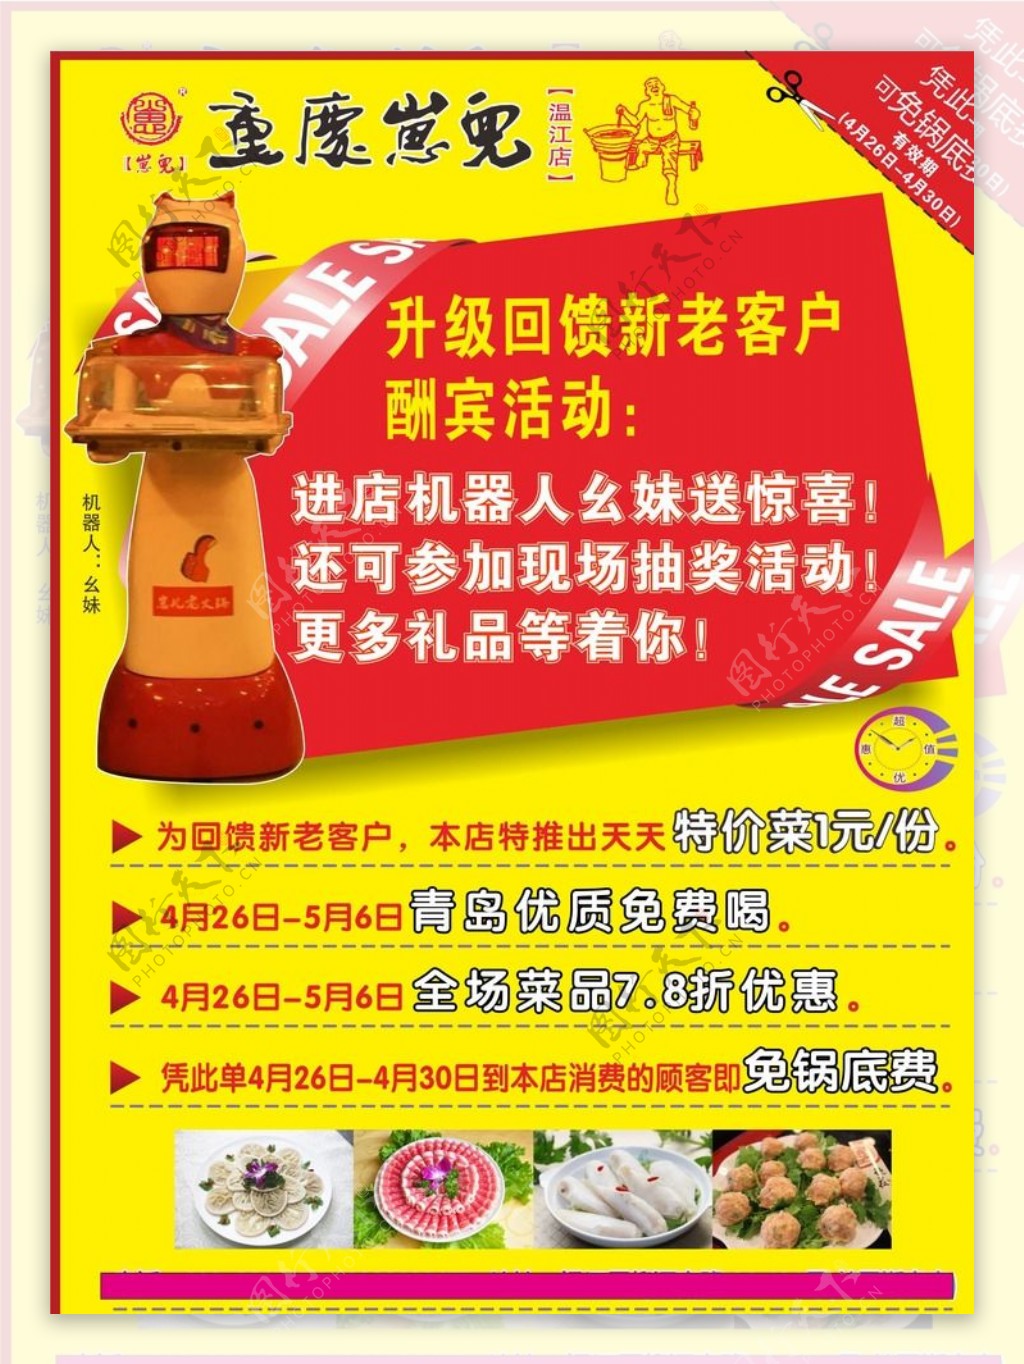 重庆崽儿火锅单页广告